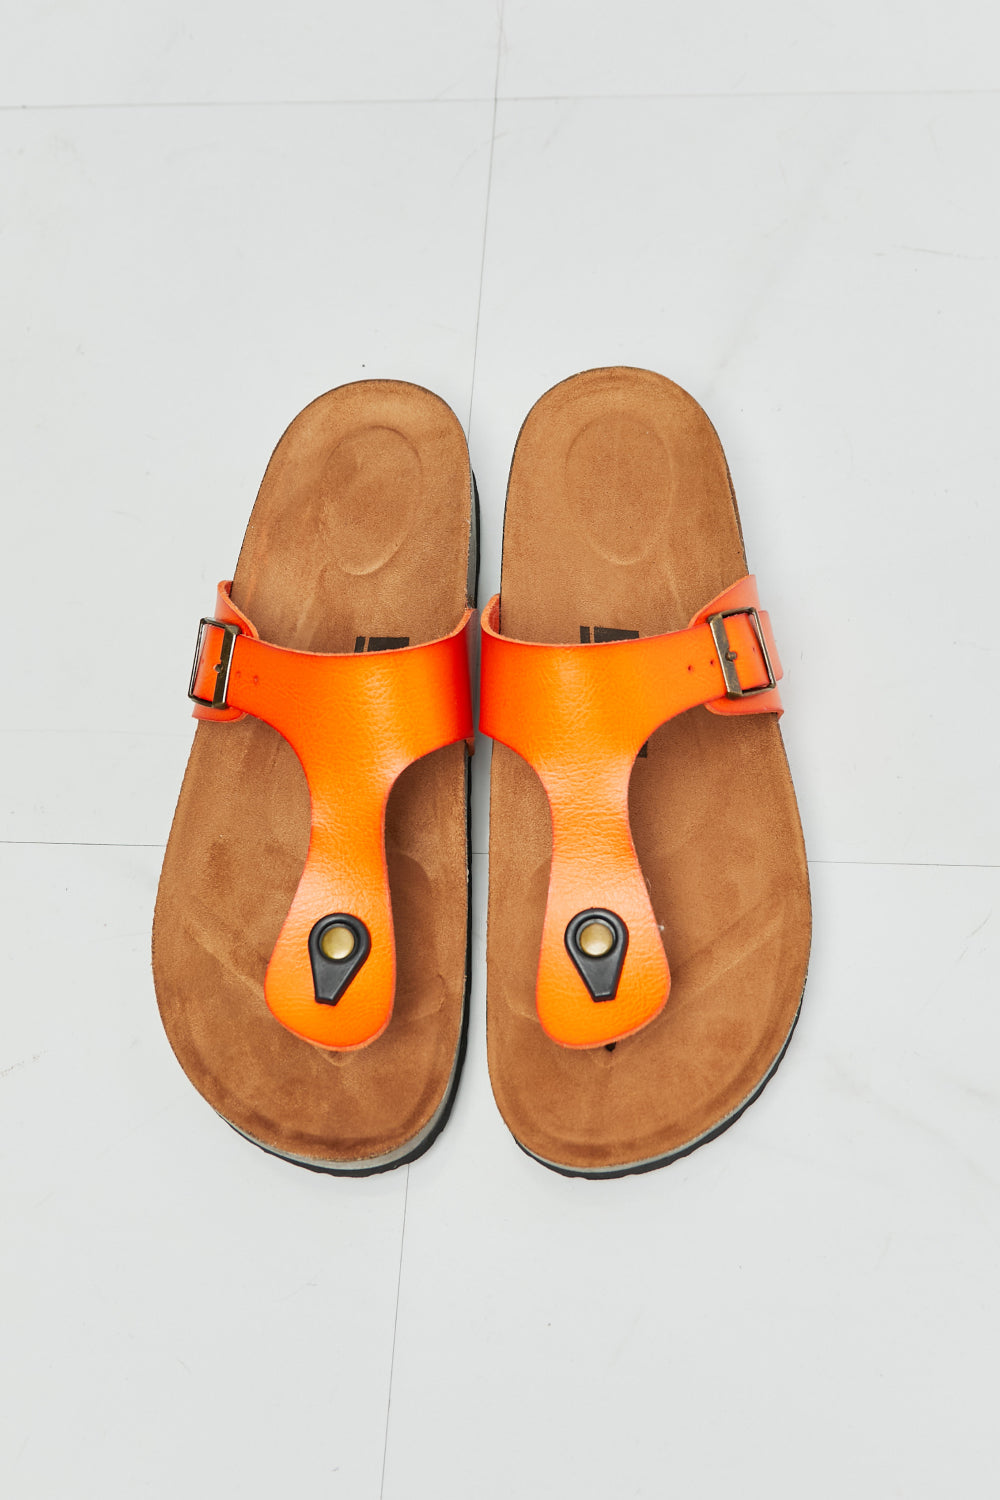 MMShoes T-Strap Flip-Flop Slide On Flat Cork Footbed Comfort Sandals in Orange Drift Away